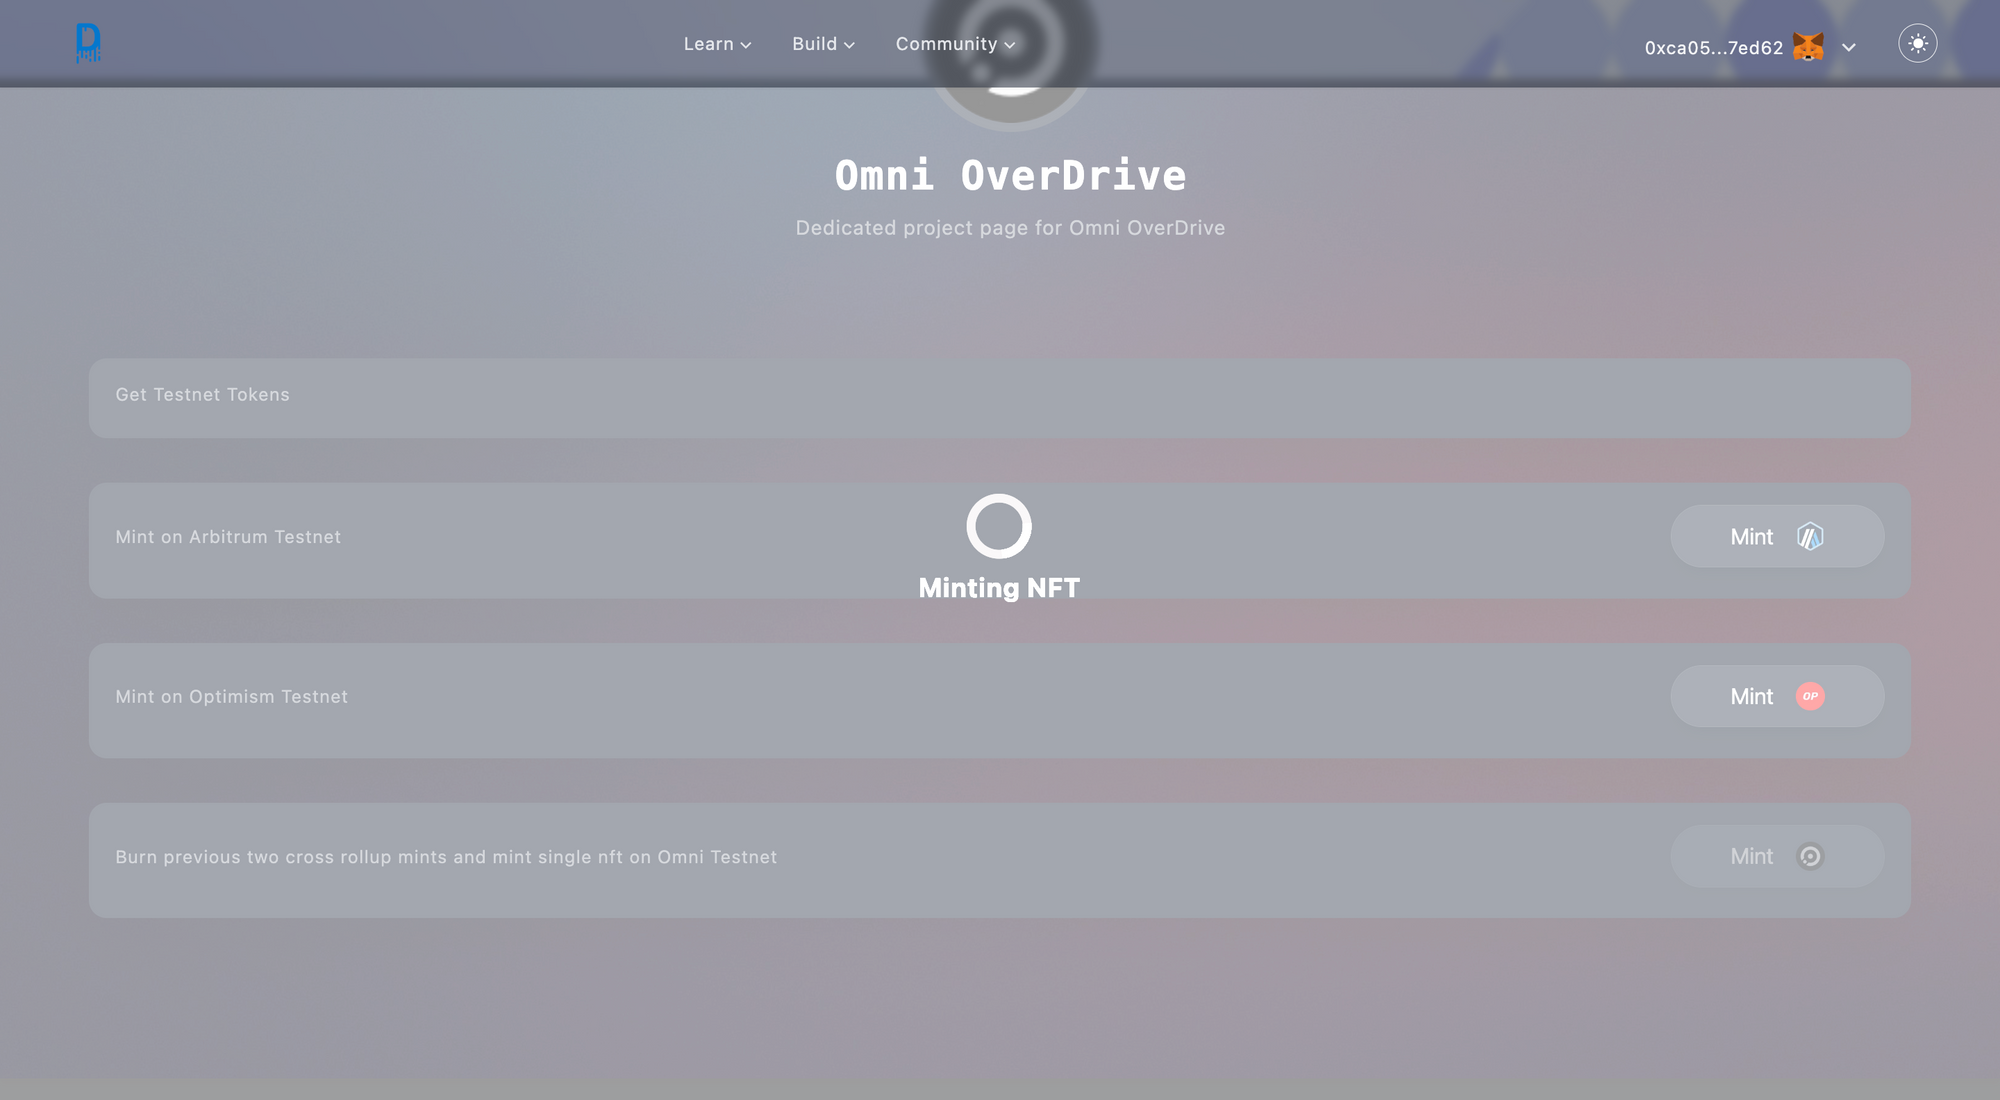 DripVerse x Omni Unite for NFT Brilliance With Omni OverDrive